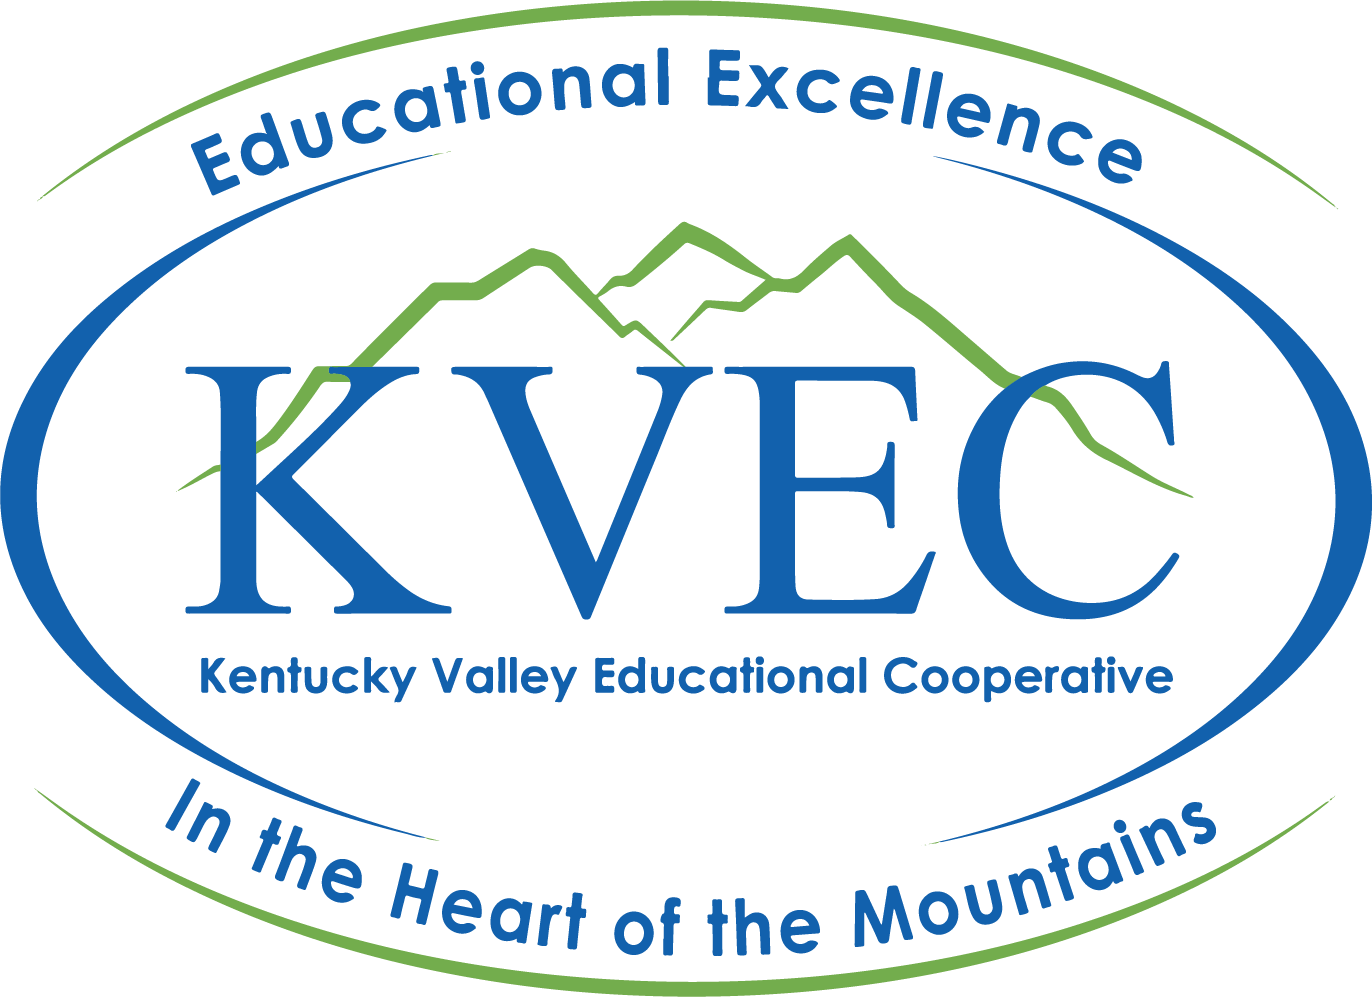 KVEC Logo